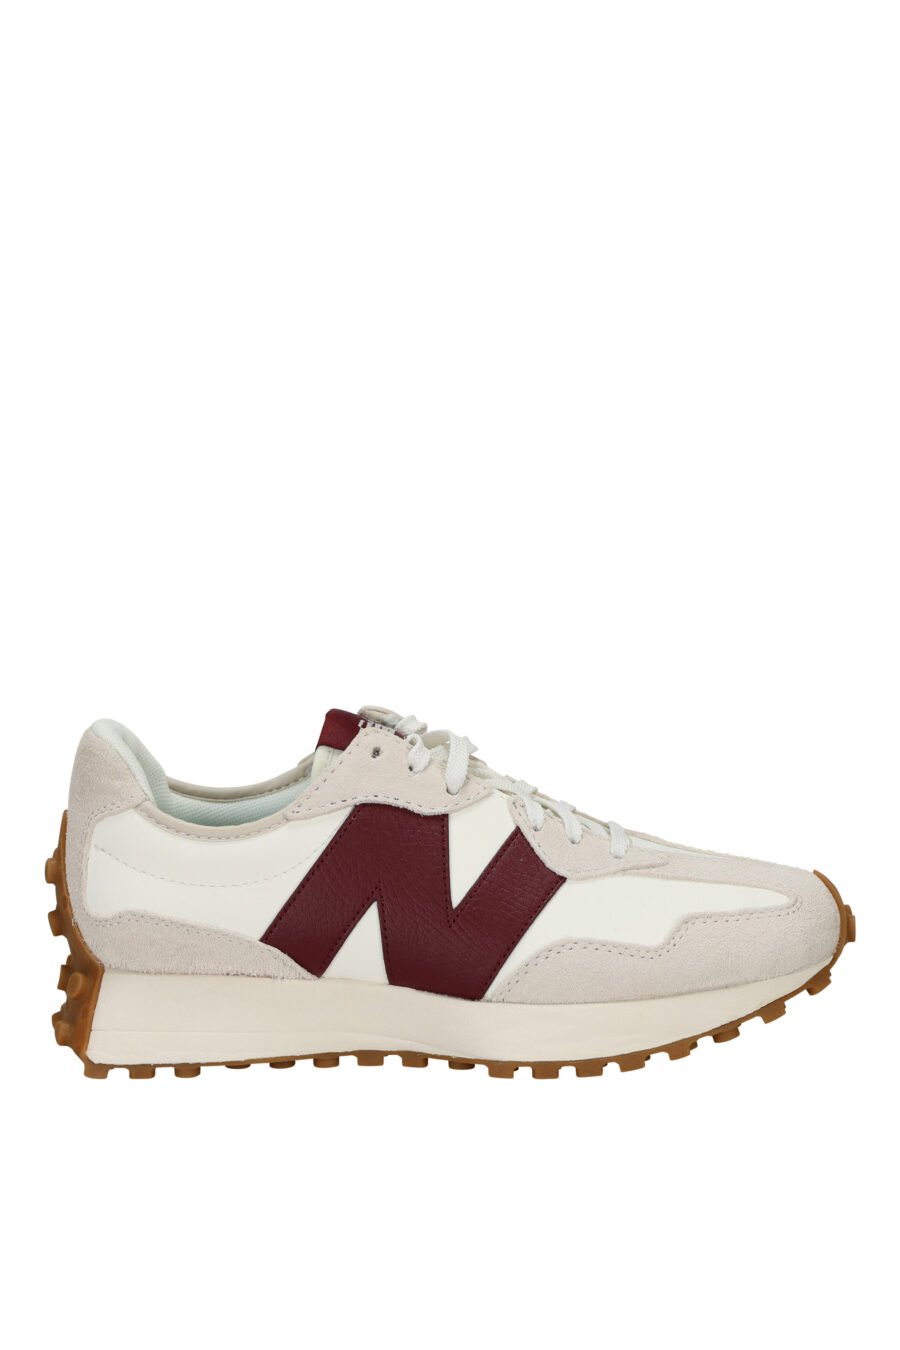 Zapatillas blancas con beige "327" y logo "N" vinotinto - 194768771989